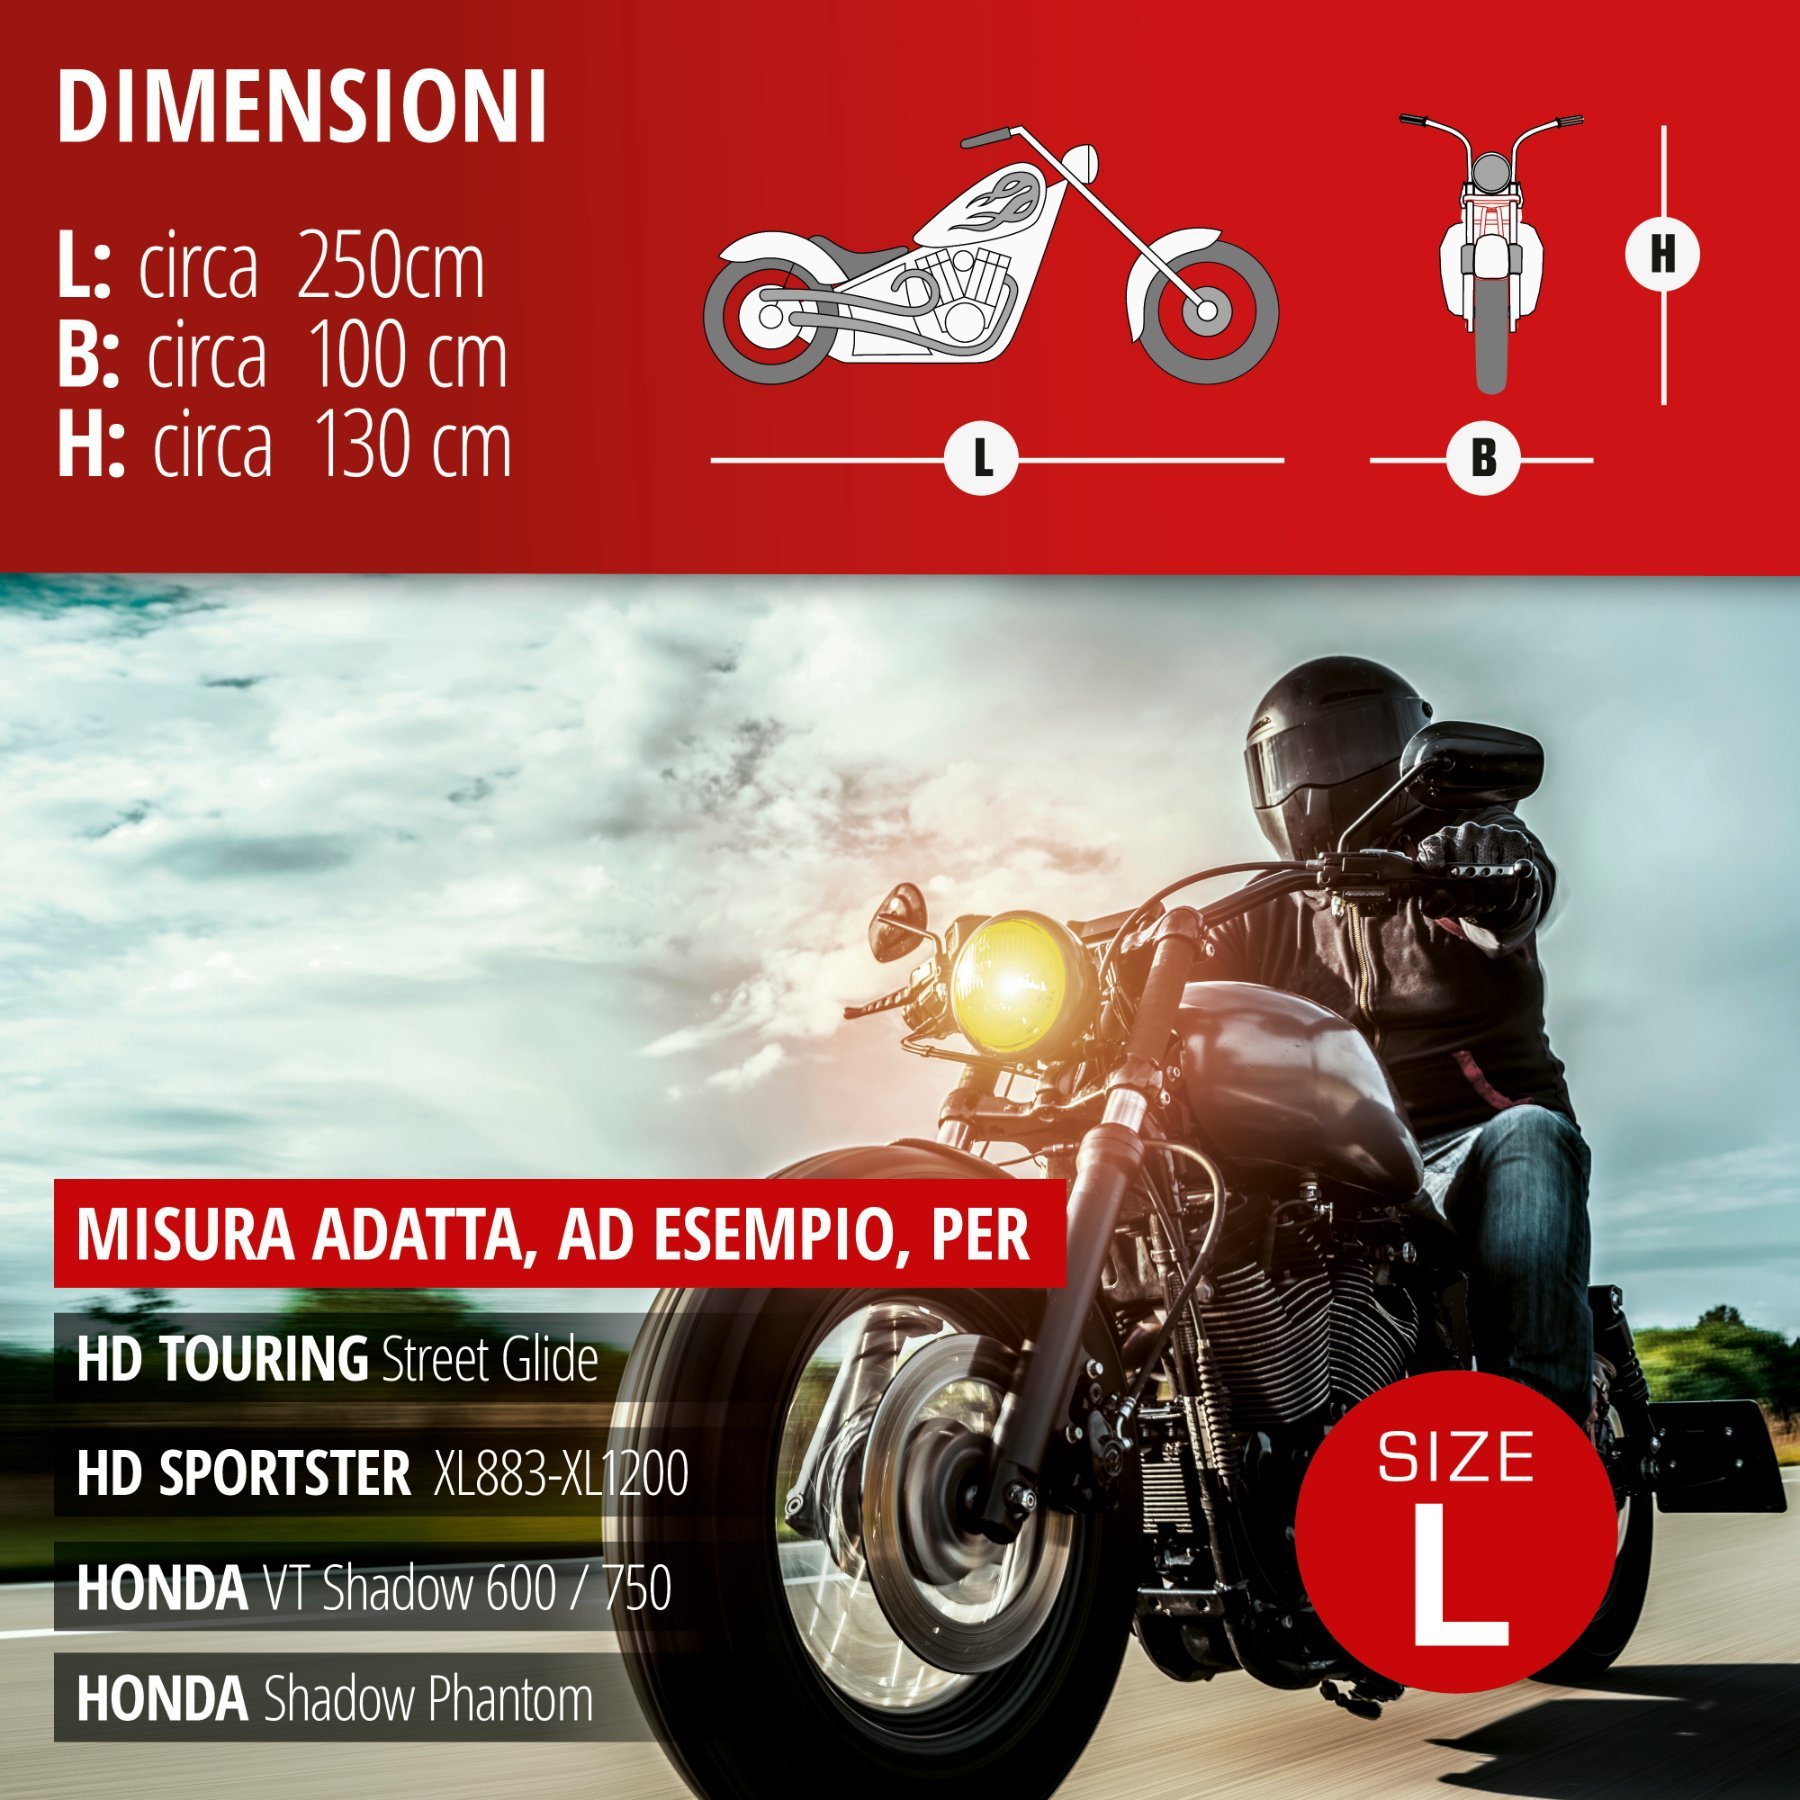 Garage per motociclette Dimensioni Chopper L PVC - 250 x 100 x 130 cm grigio